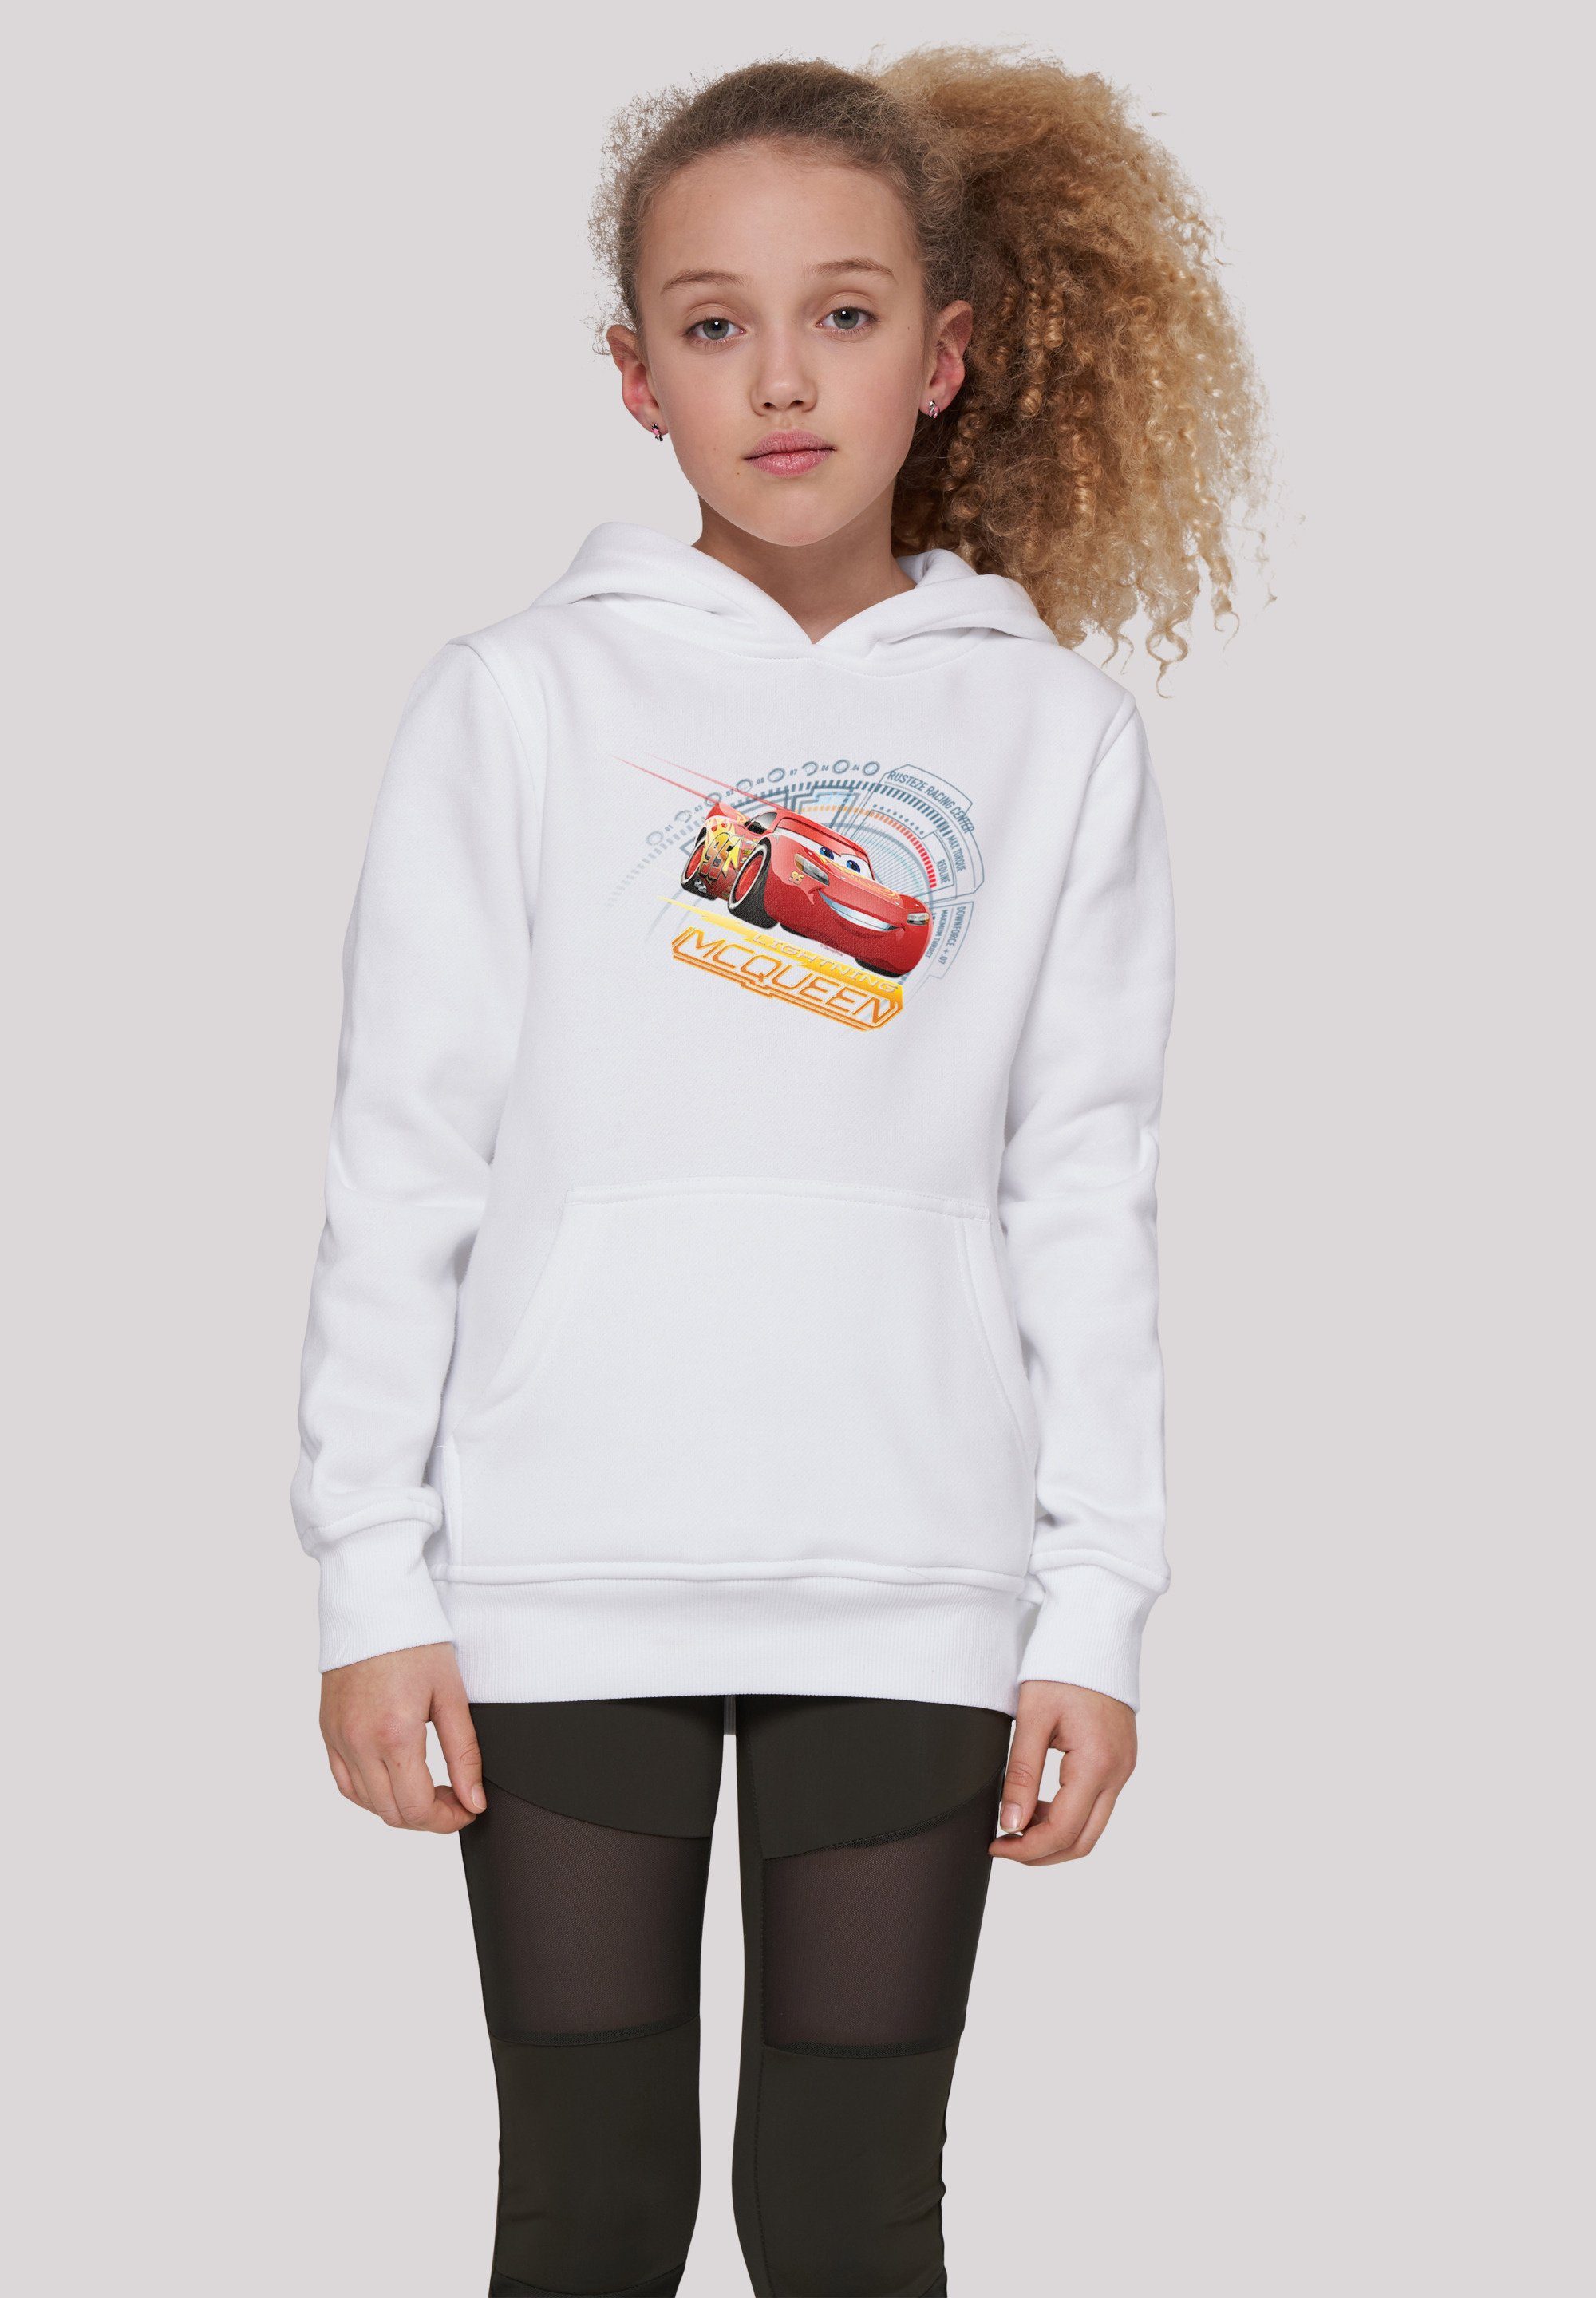 F4NT4STIC Sweatshirt Disney Cars Lightning McQueen Unisex Kinder,Premium Merch,Jungen,Mädchen,Bedruckt weiß